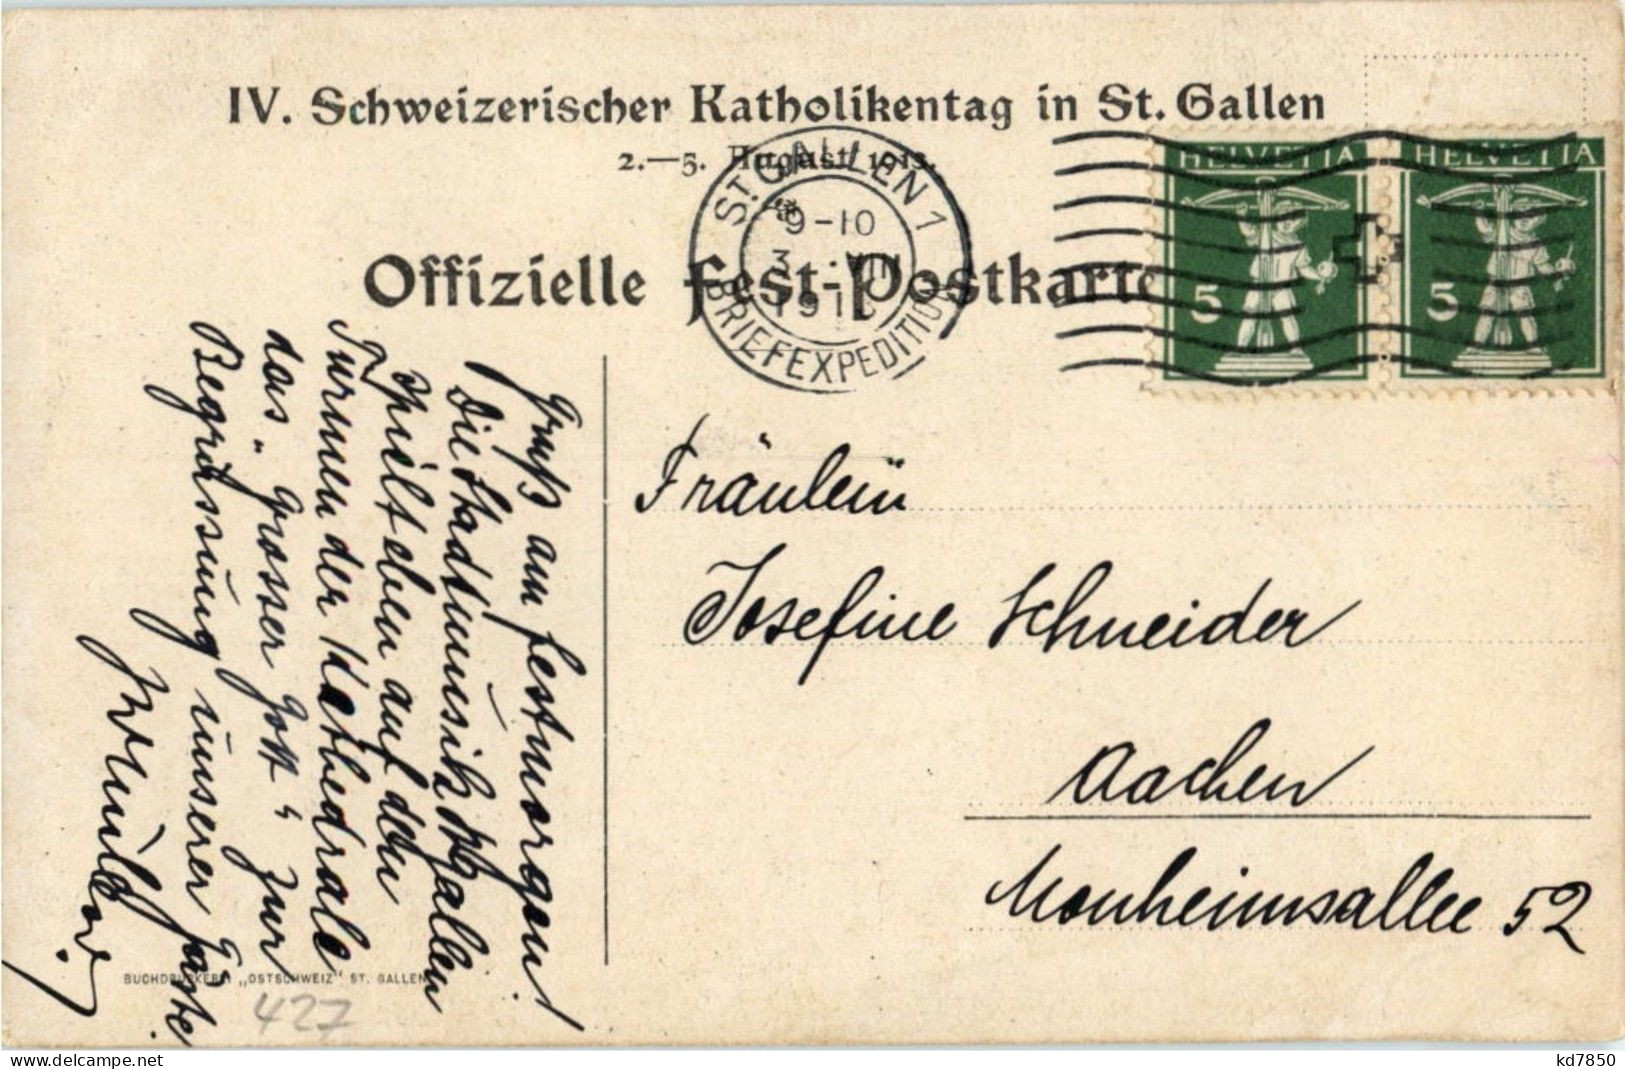 St. Gallen - Katholikentag 1913 - St. Gallen